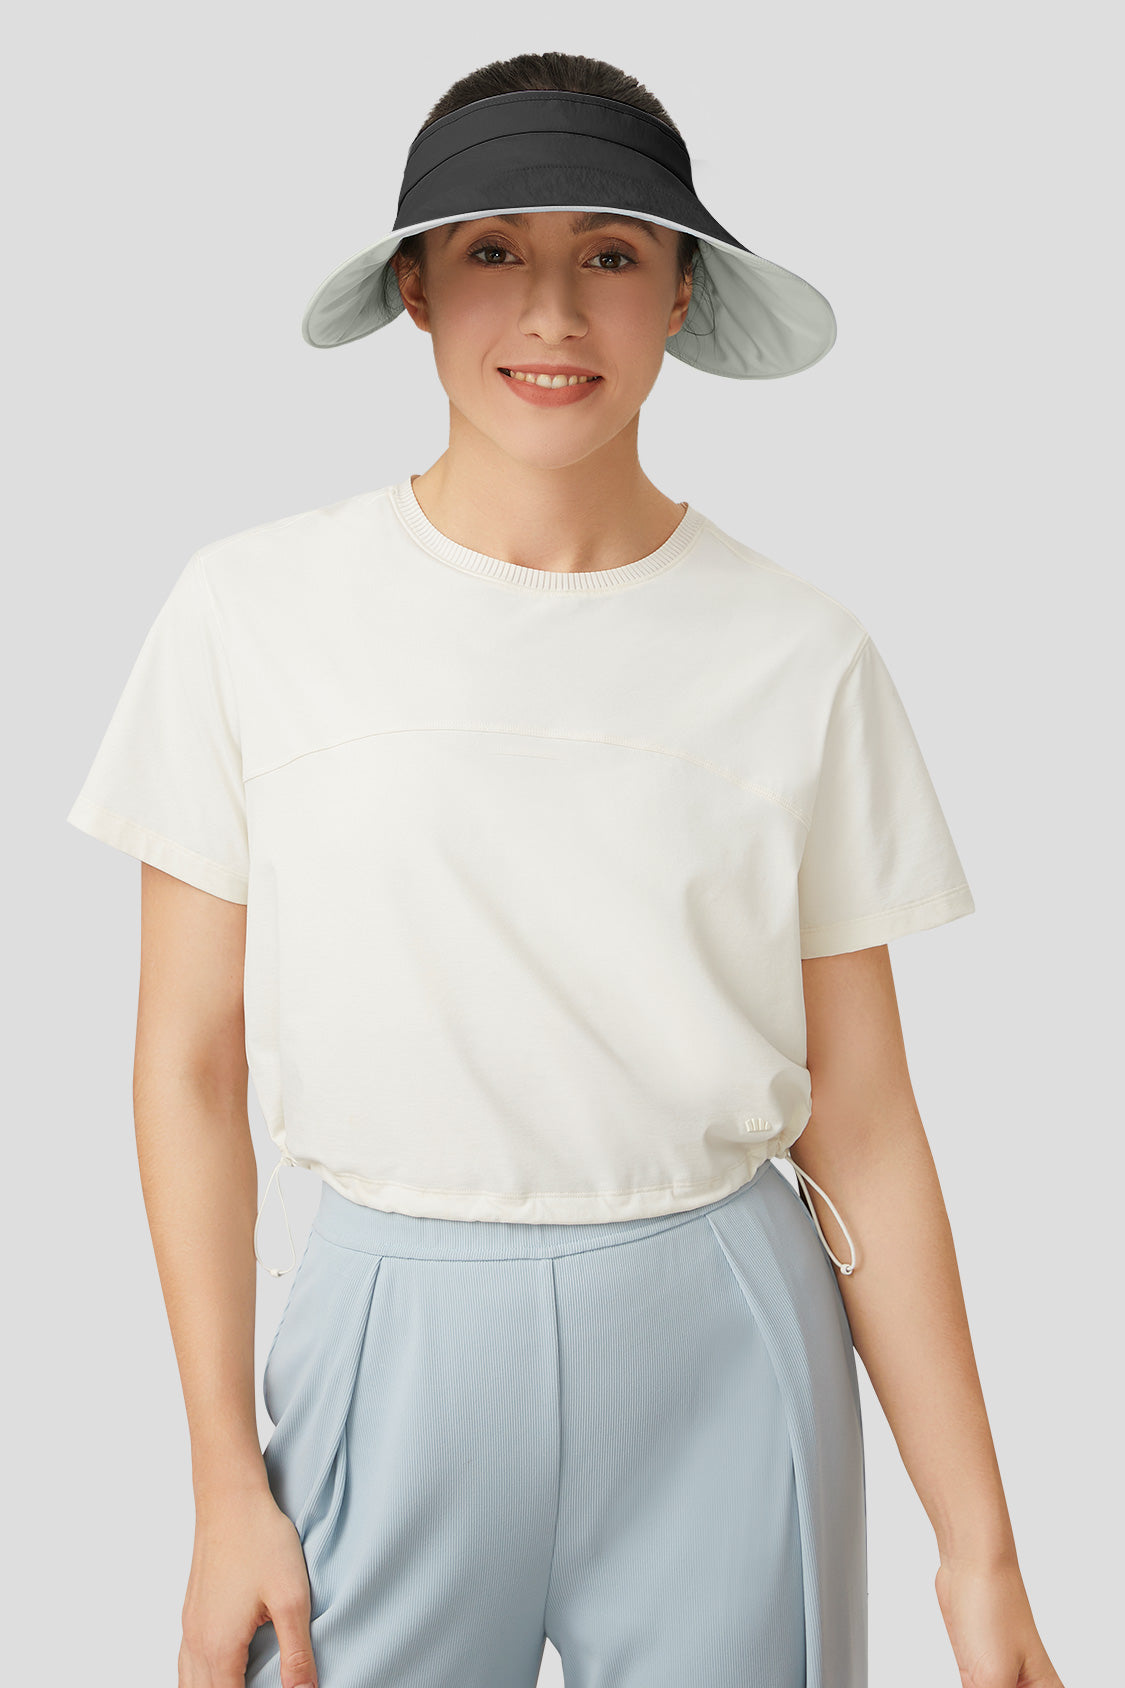 Guji Omelette - Women's Sun Protection Hat